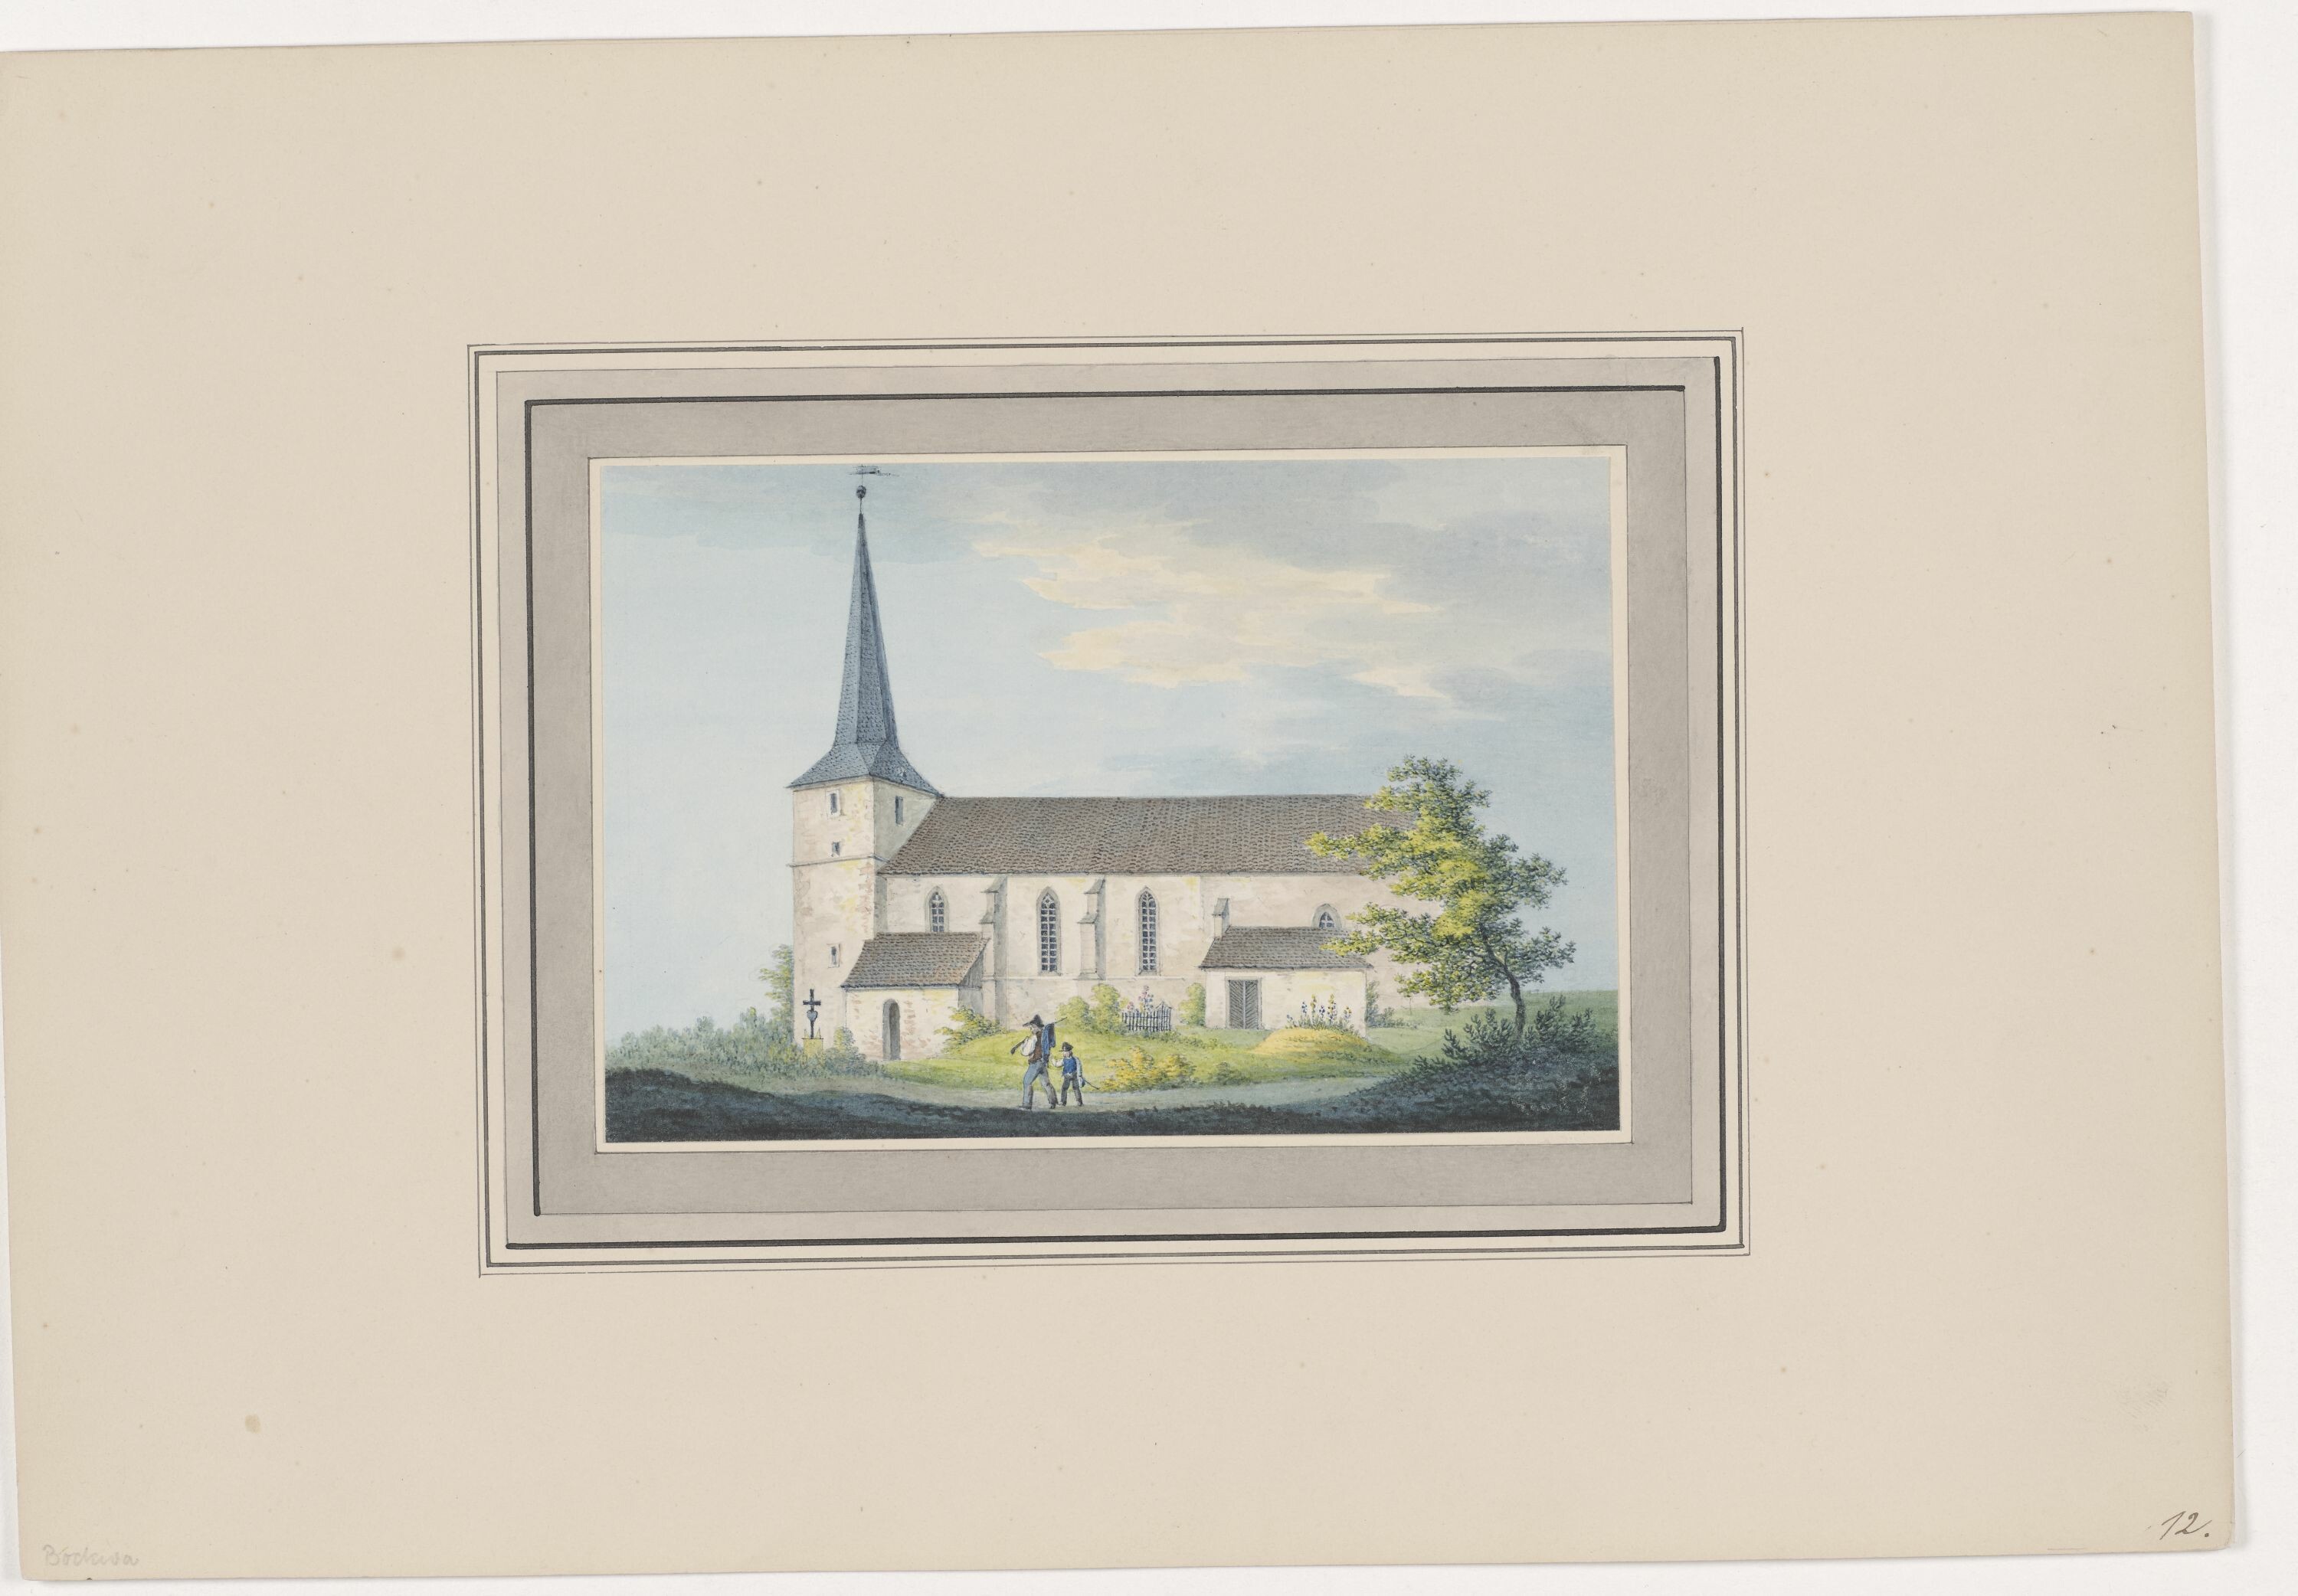 Kirche zu Bockwa, aus Mappe: Dorfkirchen der Ephorie Zwickau, Blatt 12 (KUNSTSAMMLUNGEN ZWICKAU Max-Pechstein-Museum RR-F)